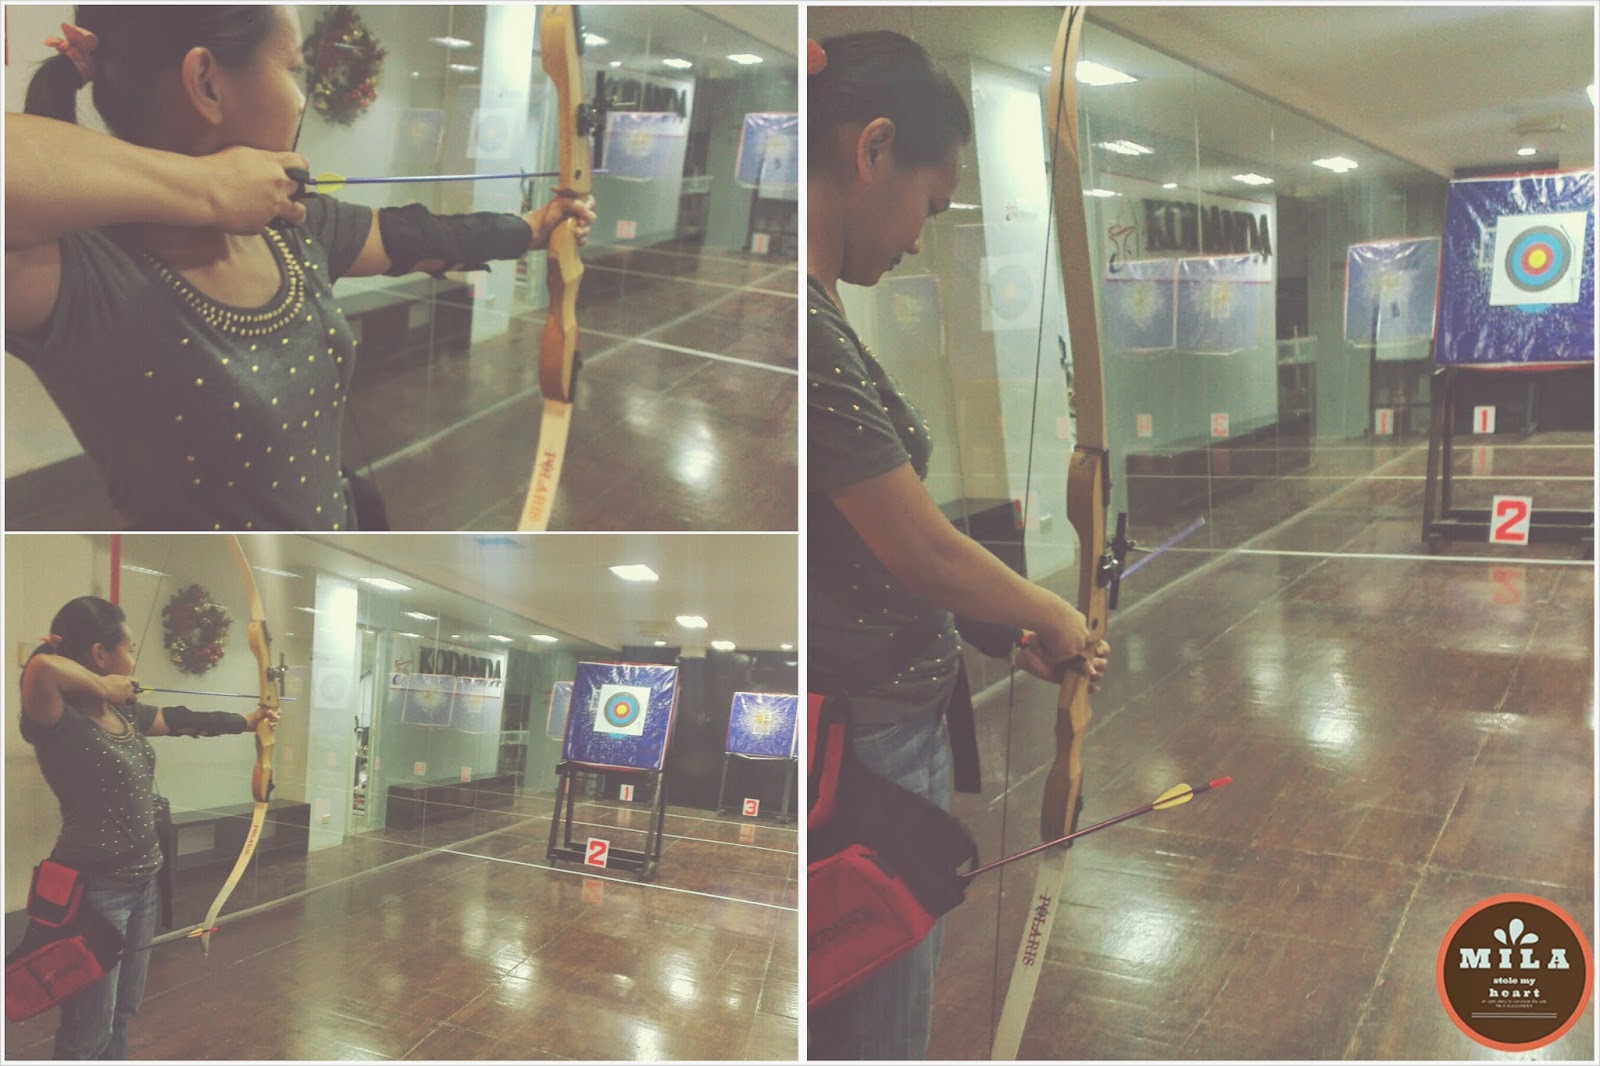 Kodanda Archery Range Practice Shot